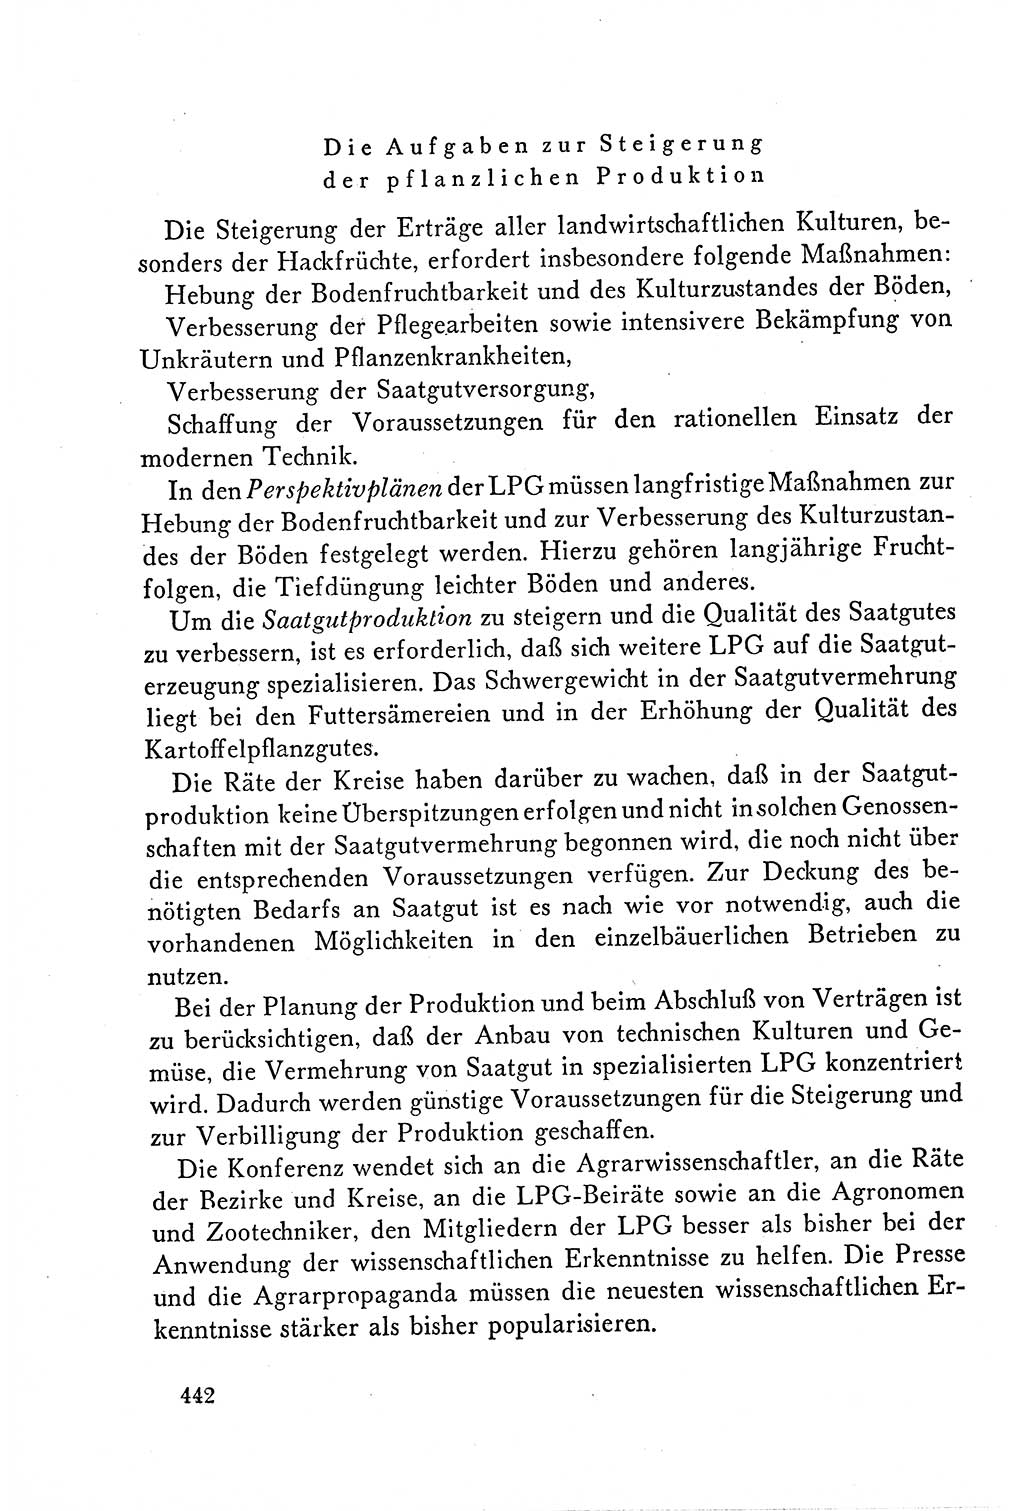 Dokumente der Sozialistischen Einheitspartei Deutschlands (SED) [Deutsche Demokratische Republik (DDR)] 1958-1959, Seite 442 (Dok. SED DDR 1958-1959, S. 442)